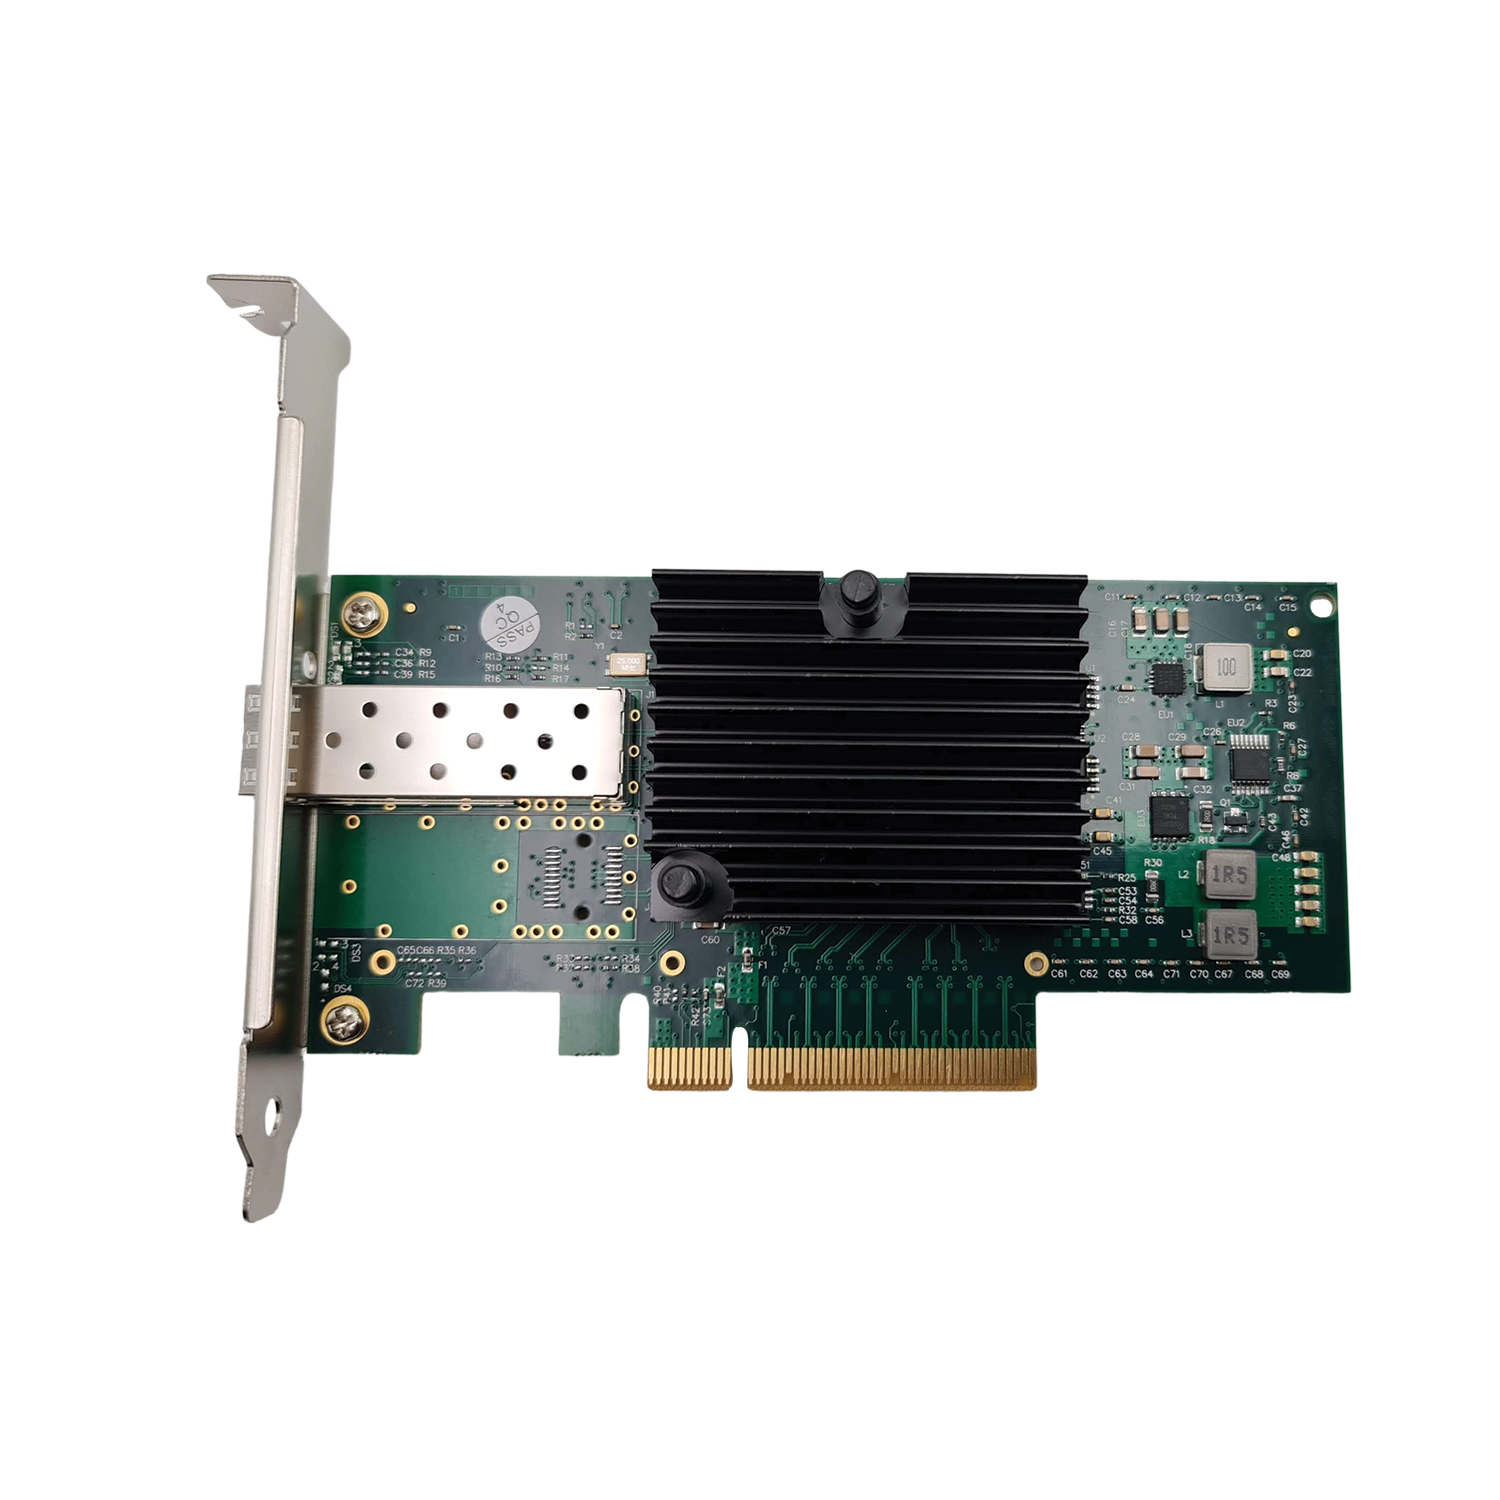 PCIe x8 to 10GbE LAN Card 1SFP (Intel Chipset)